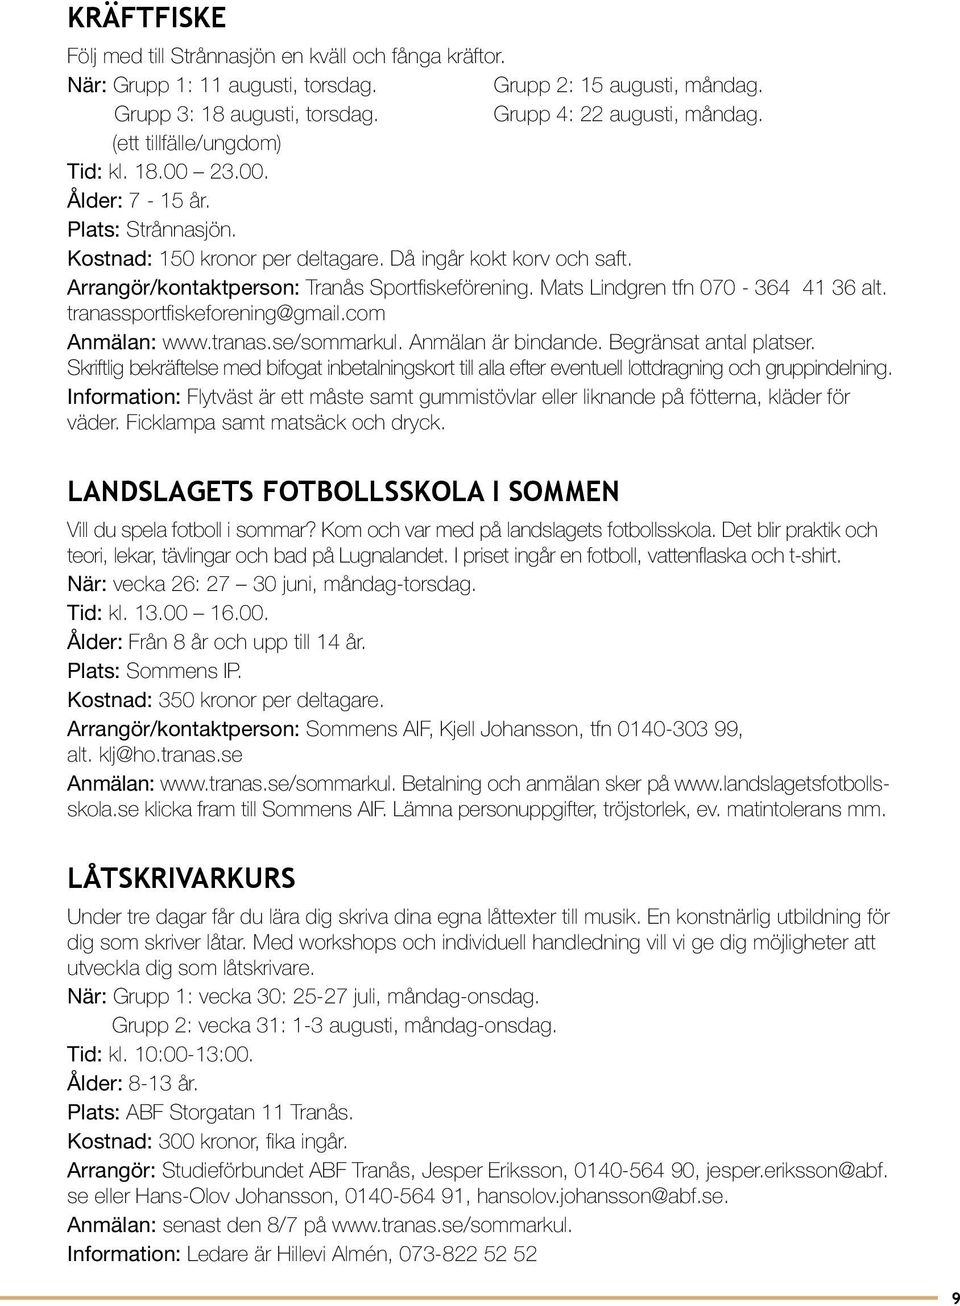 Mats Lindgren tfn 070-364 41 36 alt. tranassportfiskeforening@gmail.com. Anmälan är bindande. Begränsat antal platser.